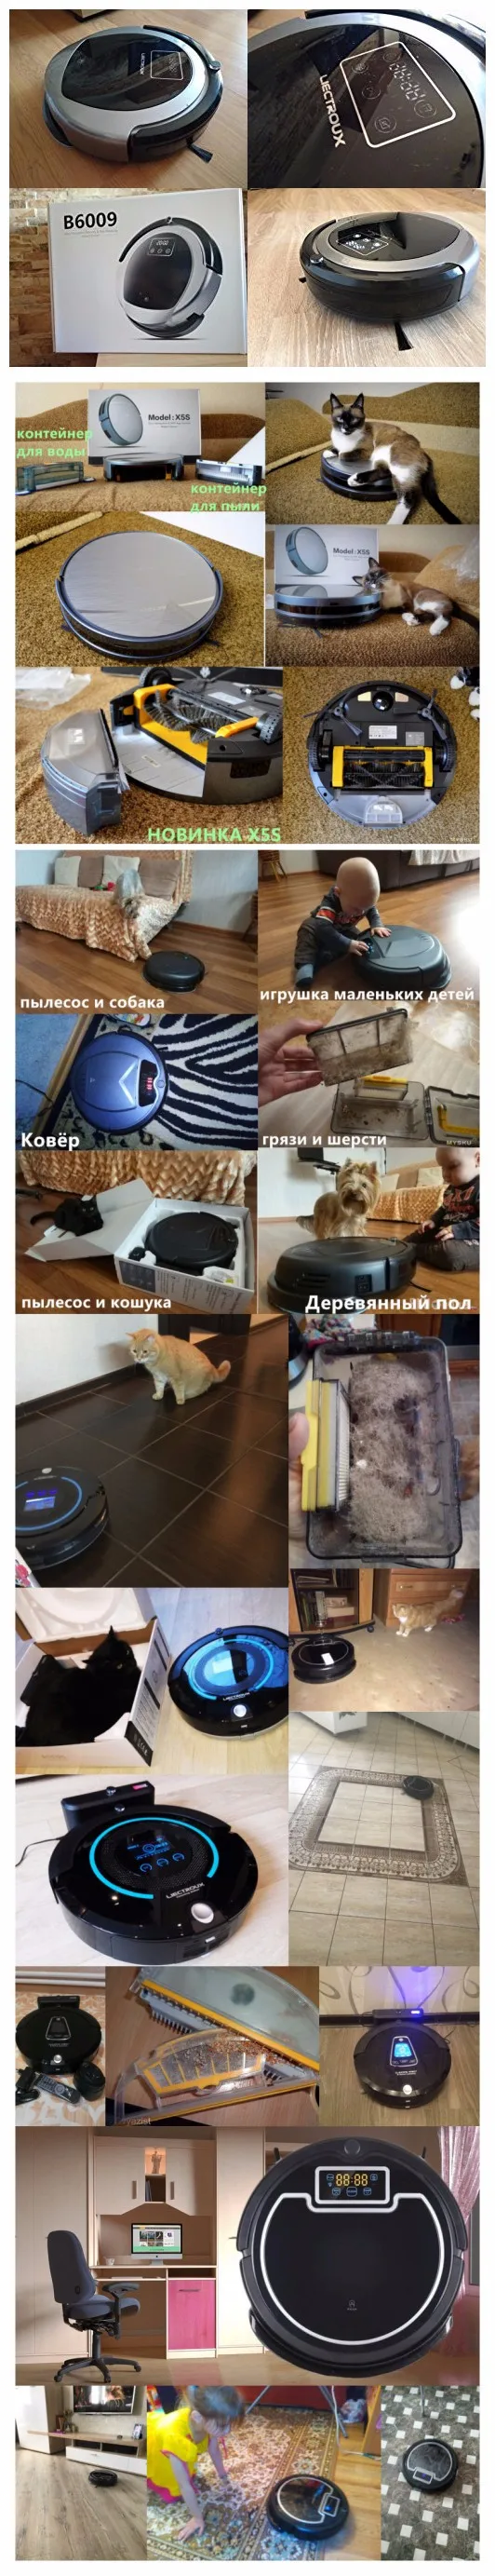 Из России) самый мощный последний робот пылесос А338 с тряпокй, настройка времени уборки виртуальная стена,подметание, авто подзарядка,УФ лампа,LCD экран, фильтр HEPA, робот пылеосс для дома,колесо щетка